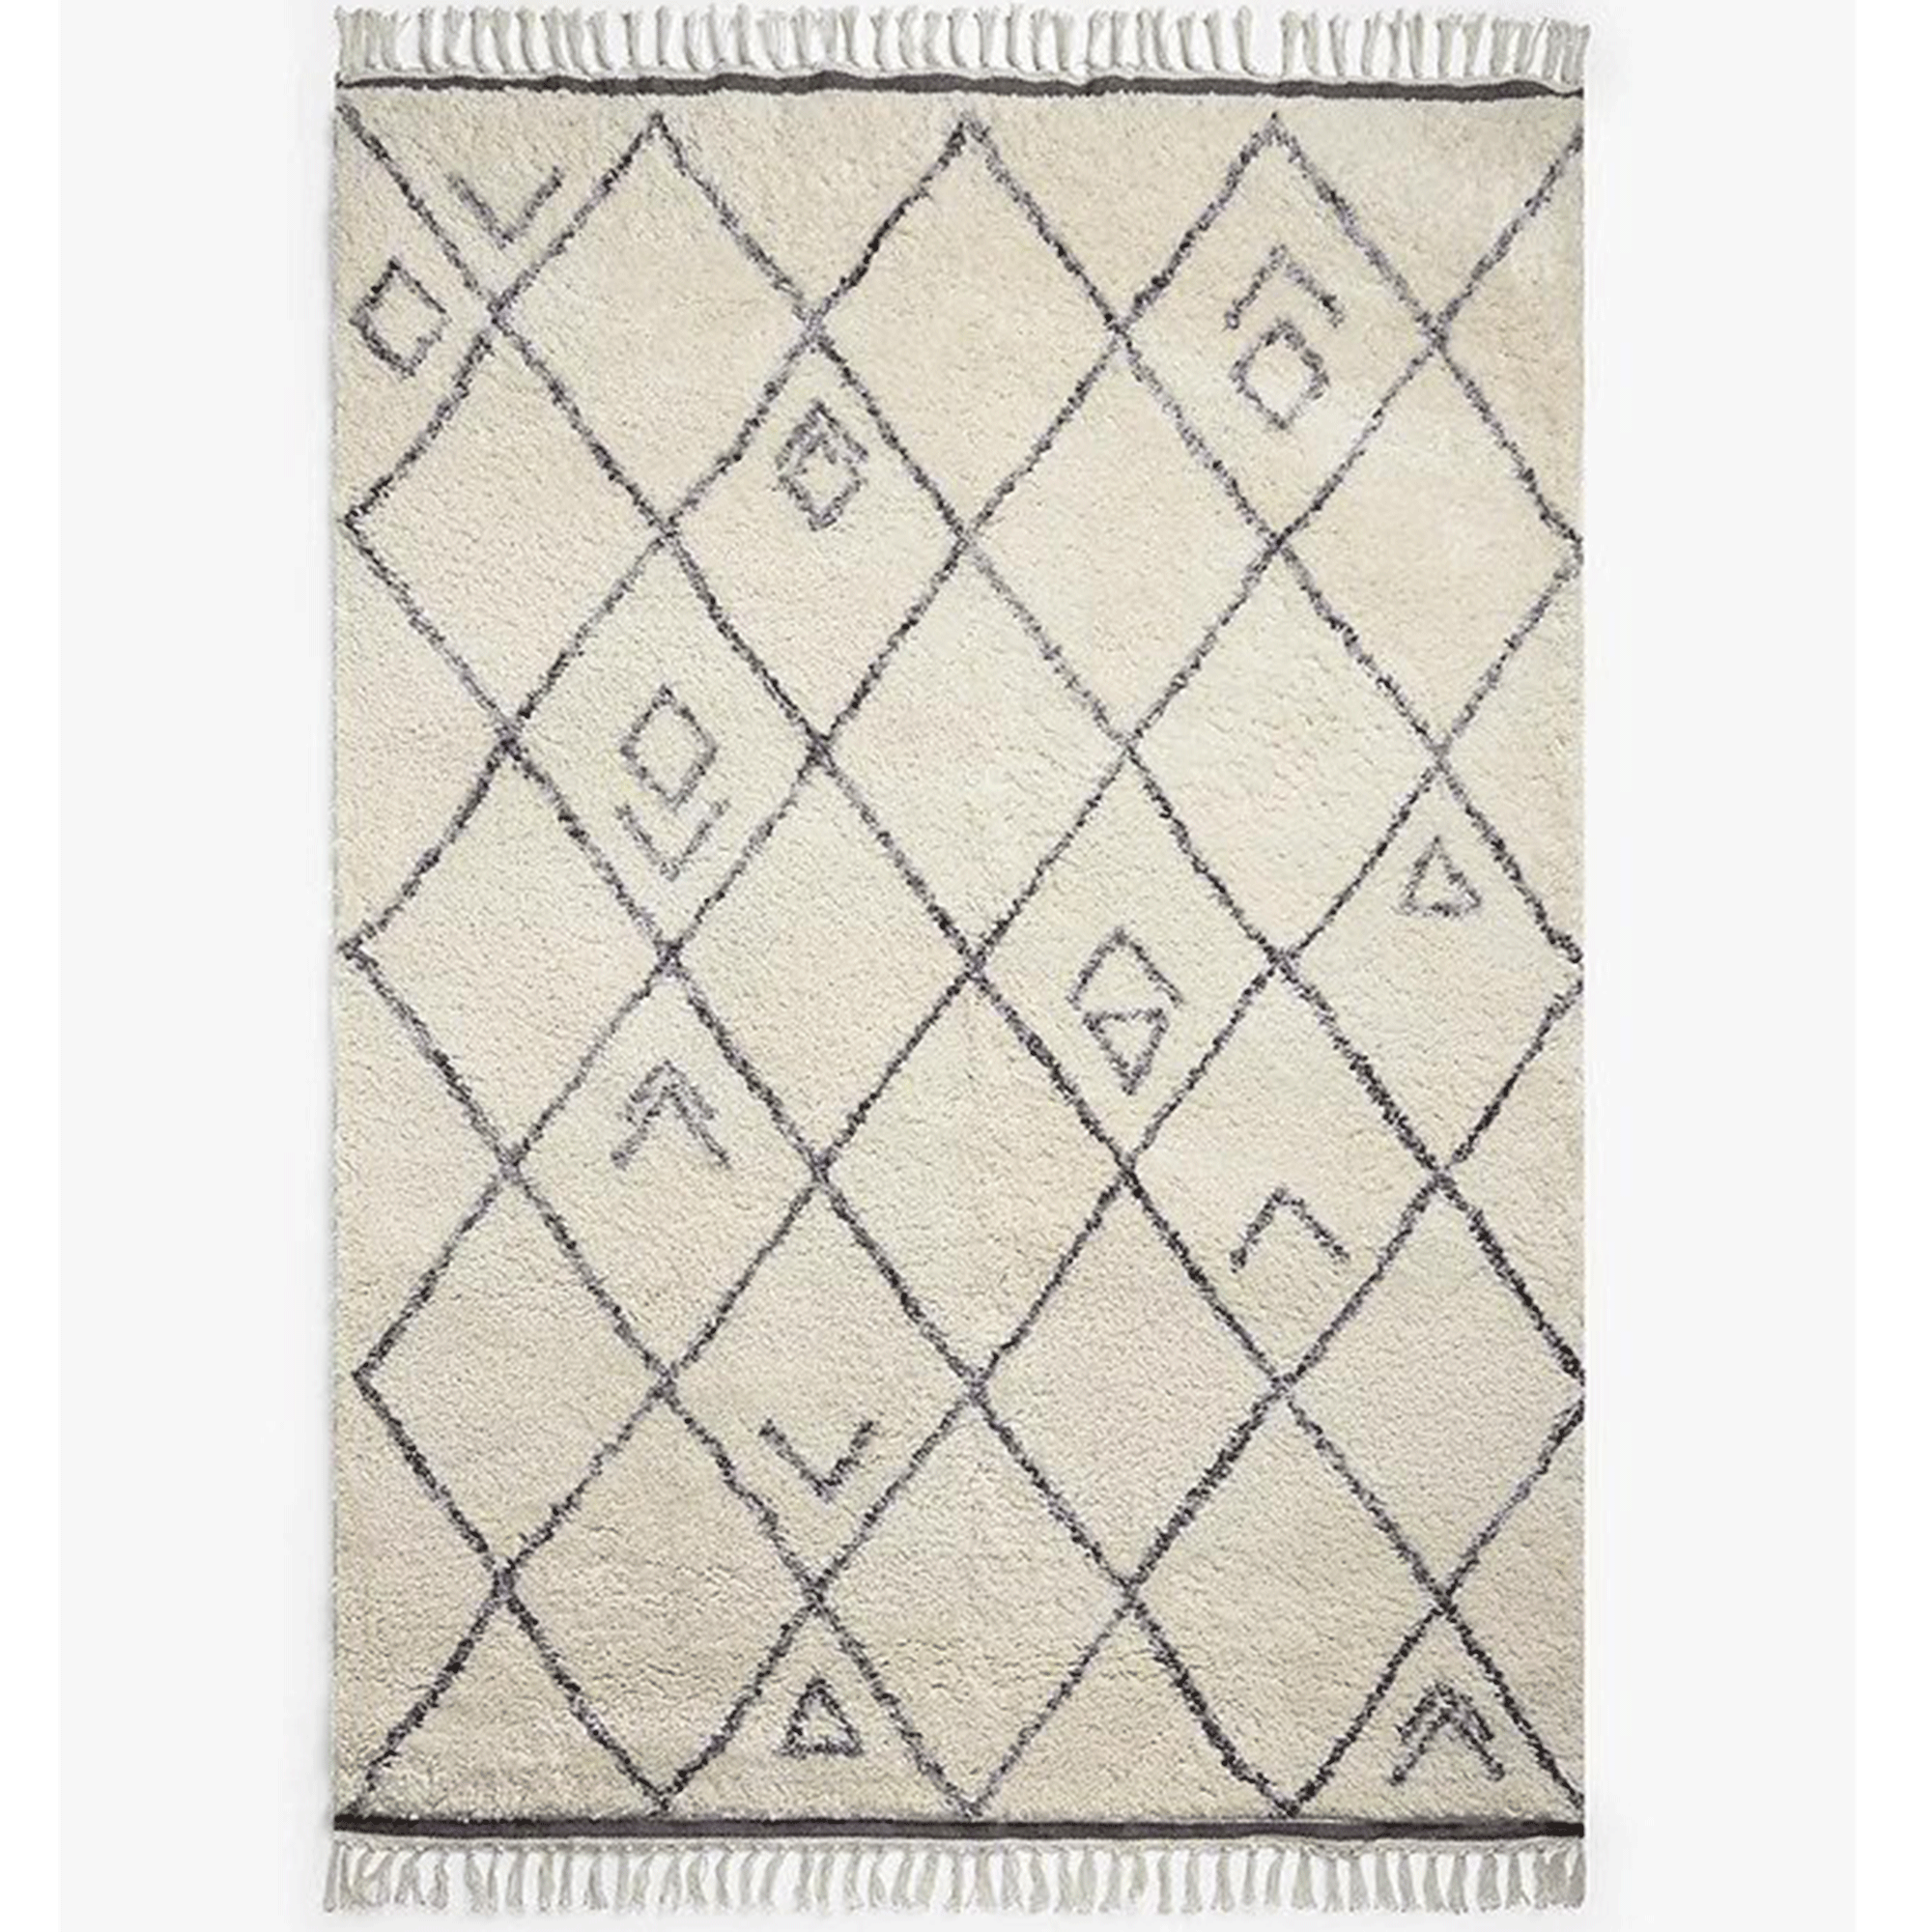 John Lewis berber rug